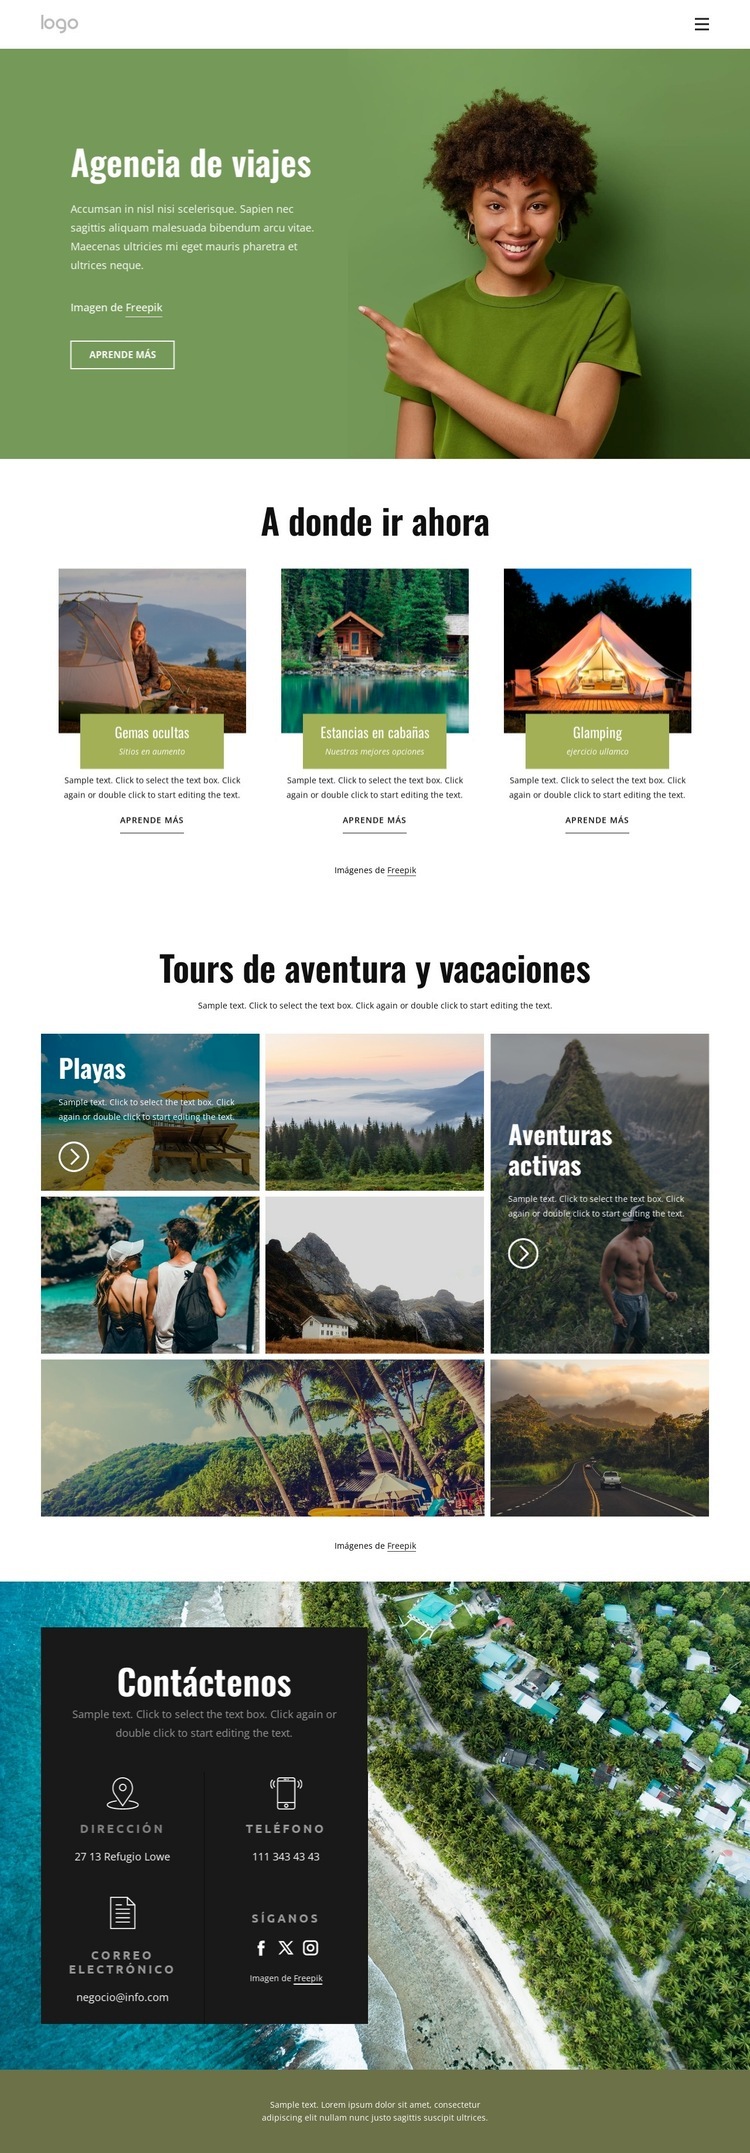 Viajes de aventura y vacaciones. Maqueta de sitio web